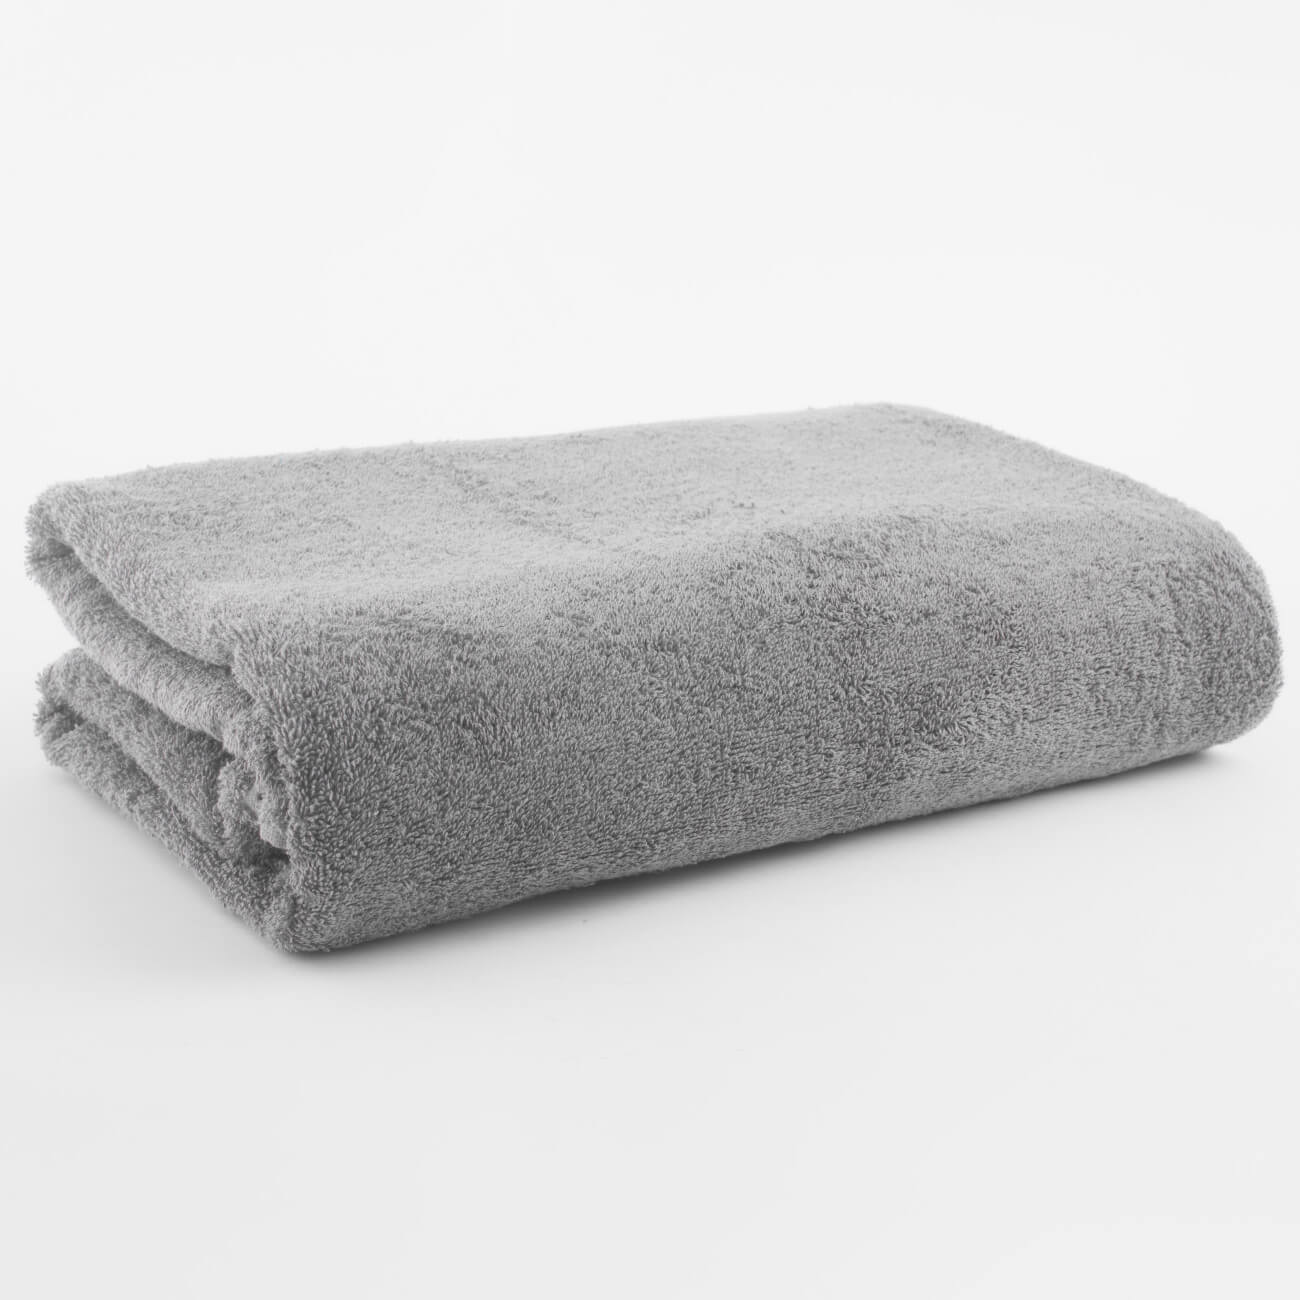 Полотенце, 100х150 см, хлопок, серое, Wellness натуральное бумажное полотенце tork